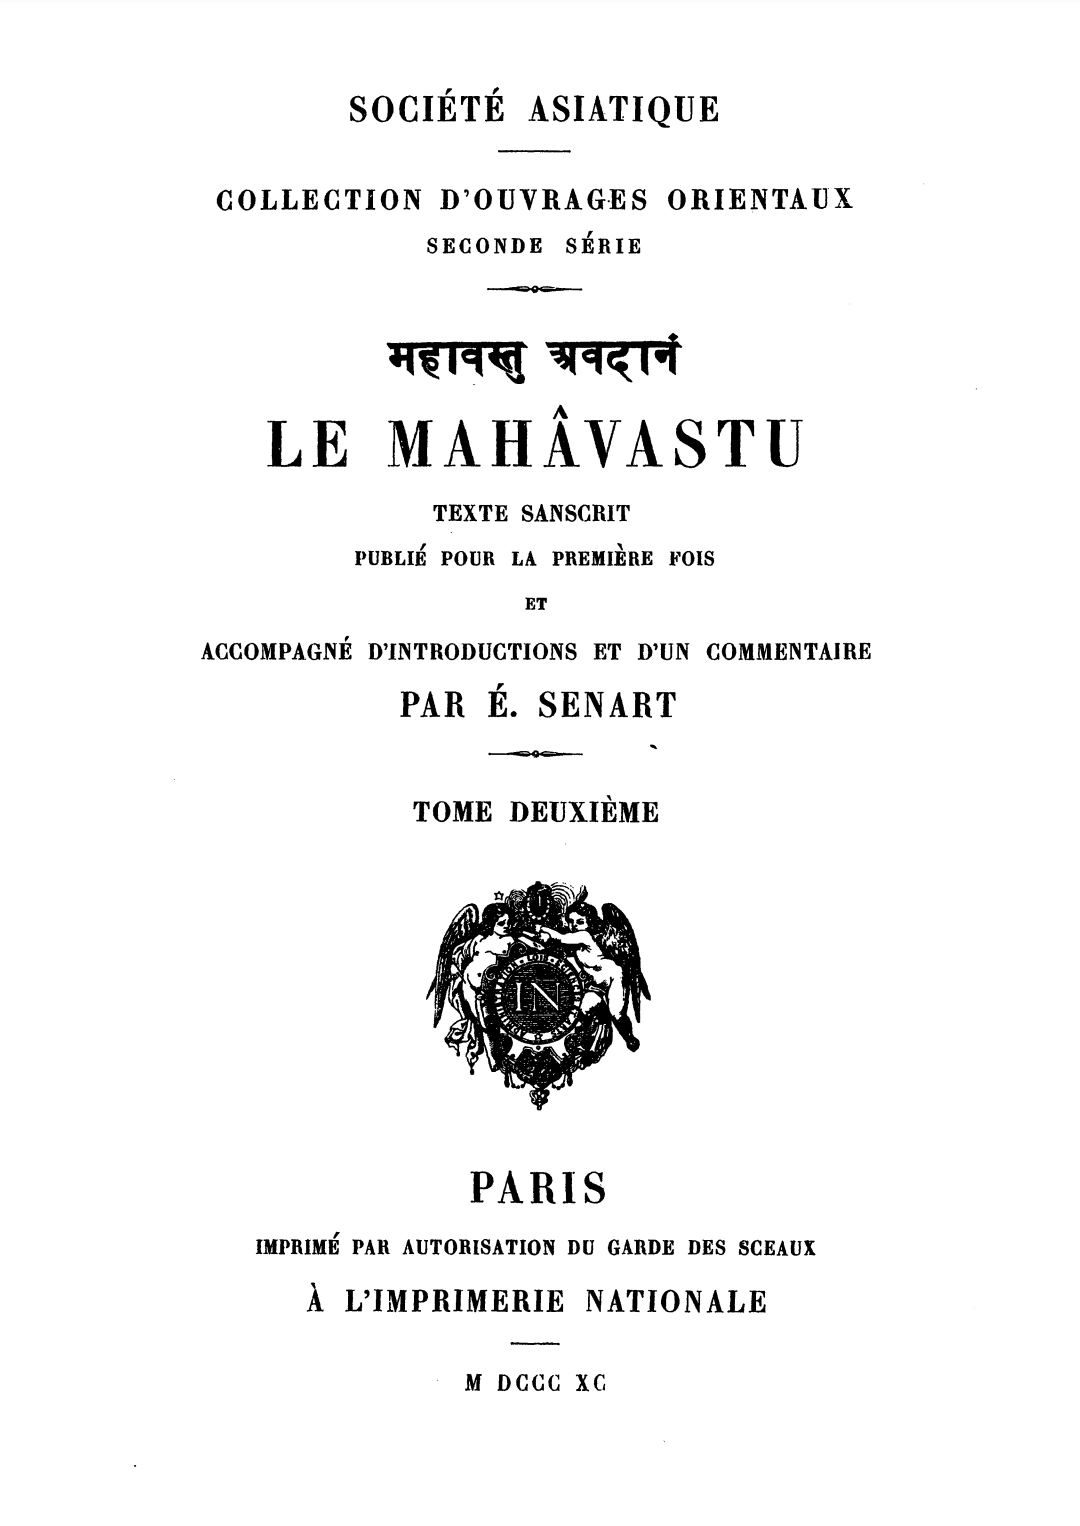 Le Mahavastu Vol 2-1977.jpg